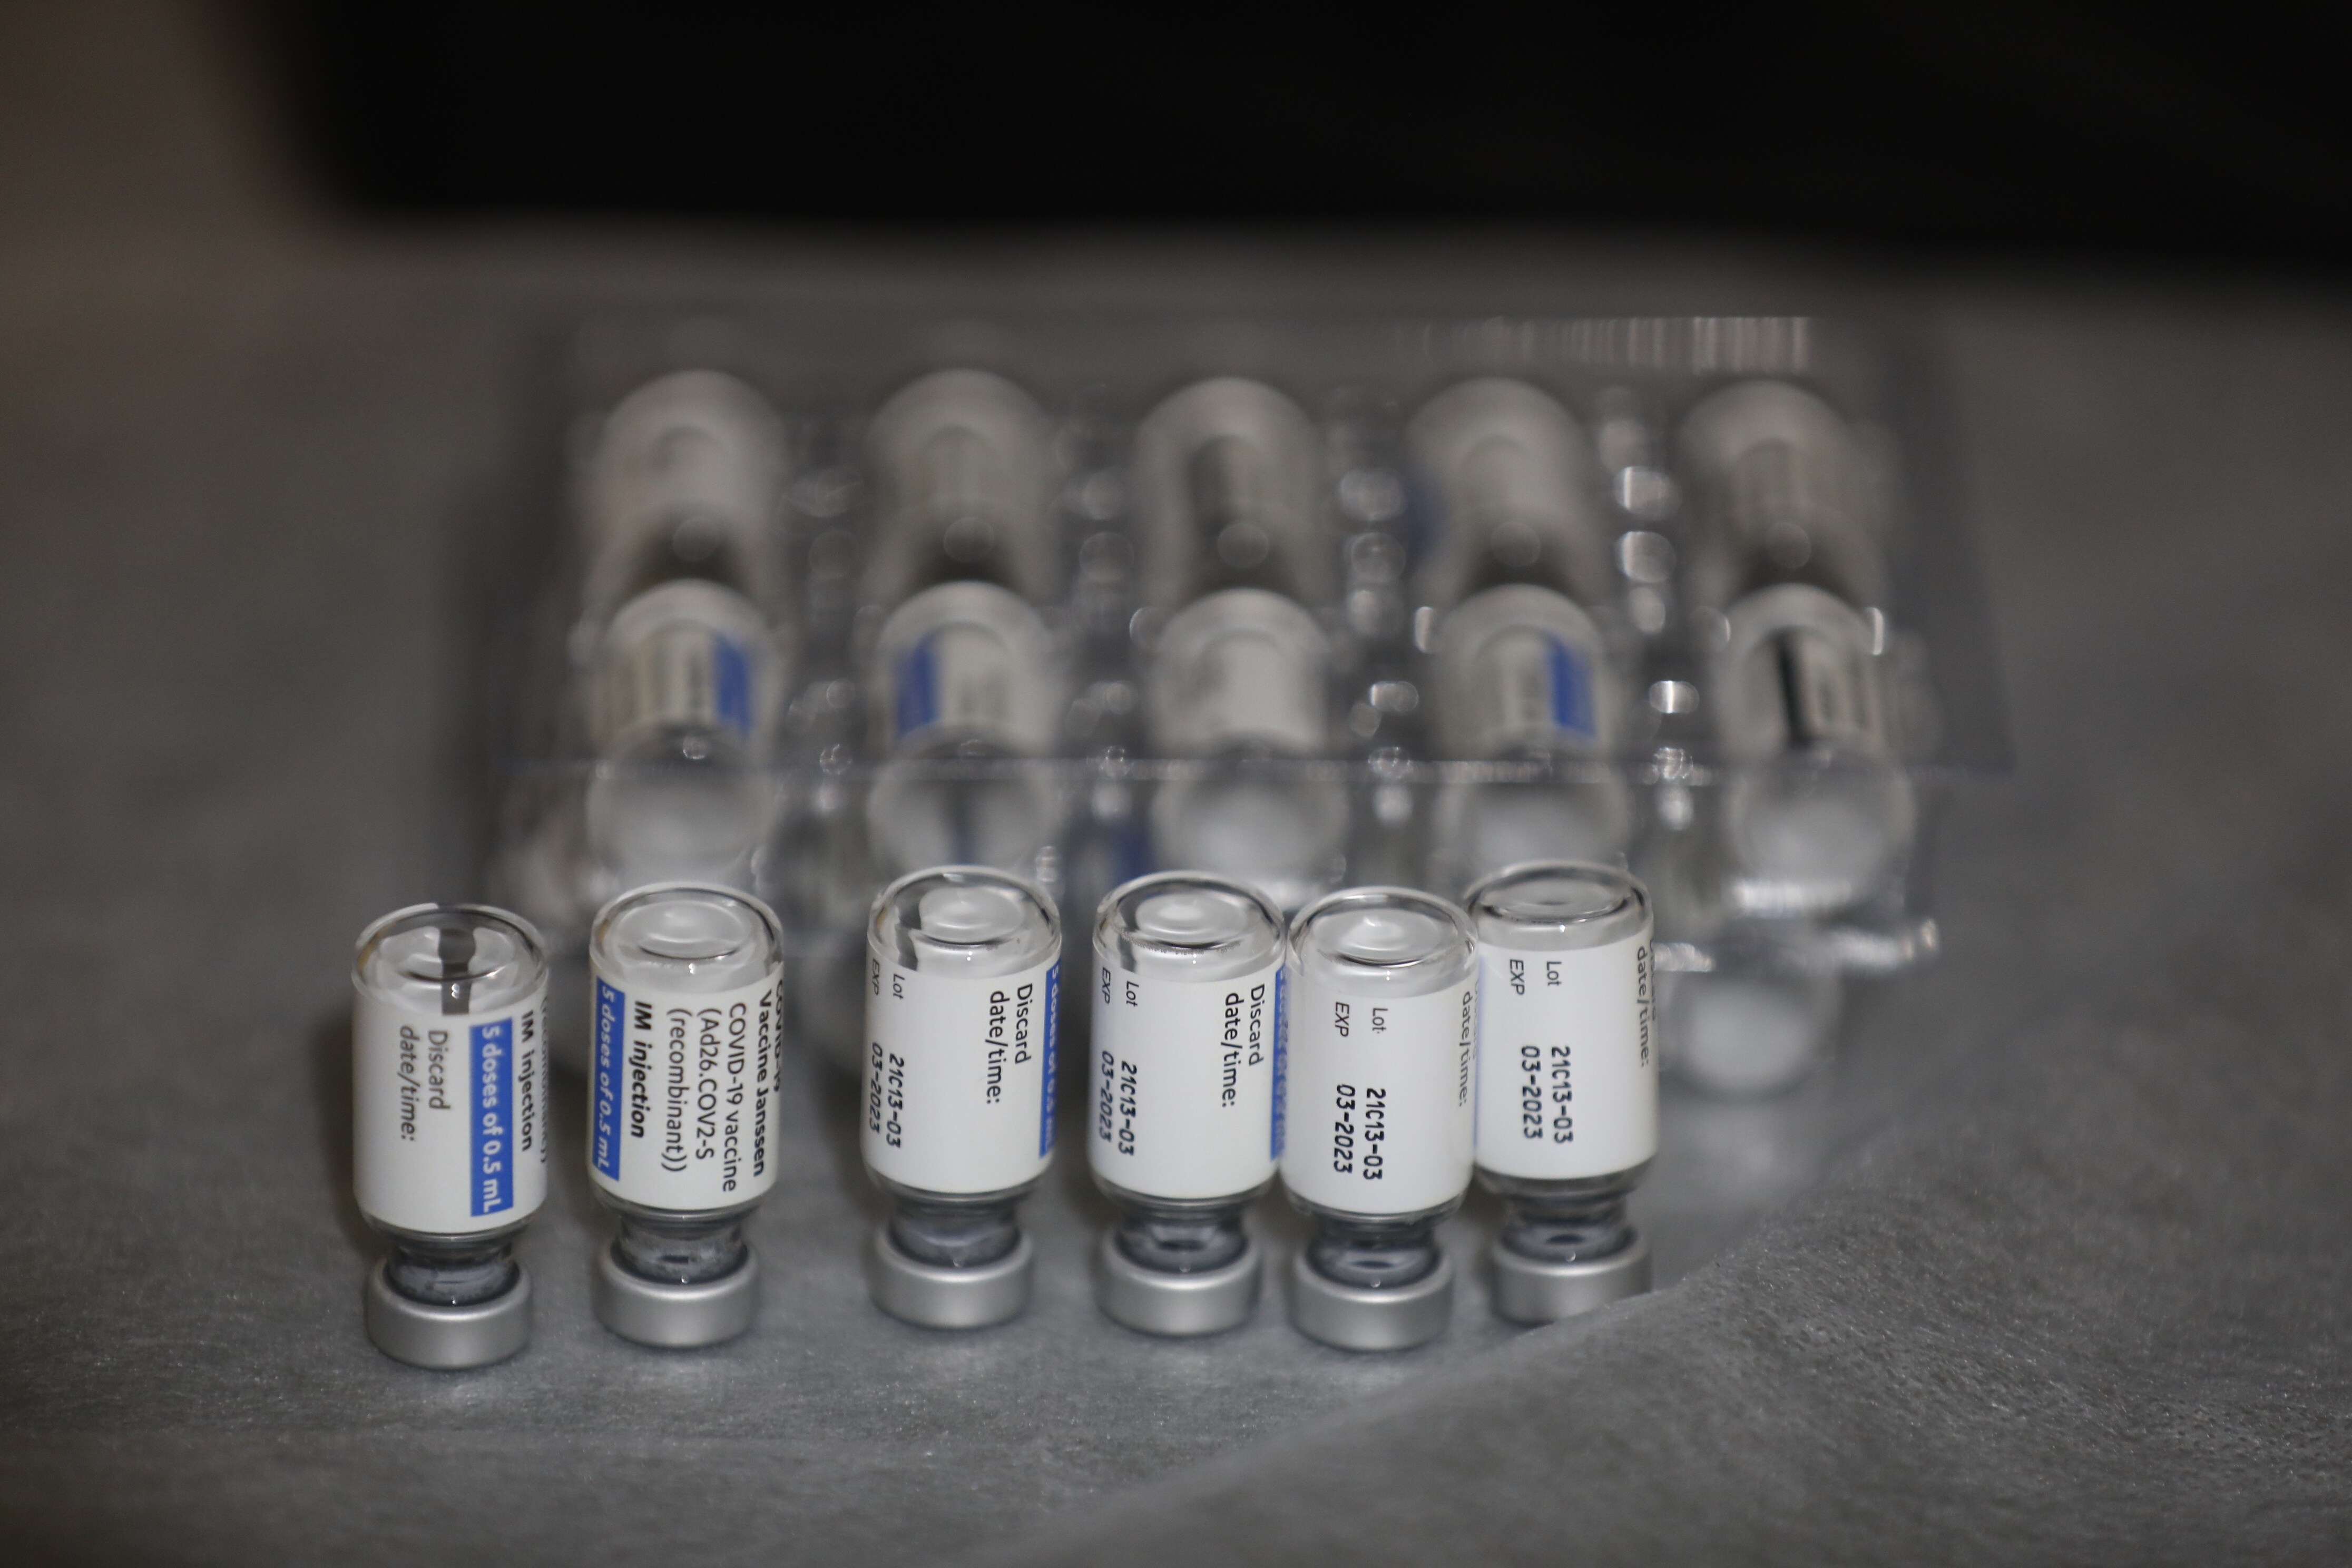 La vacunación de cordobeses de entre 40 y 69 años en Vista Alegre, en imágenes